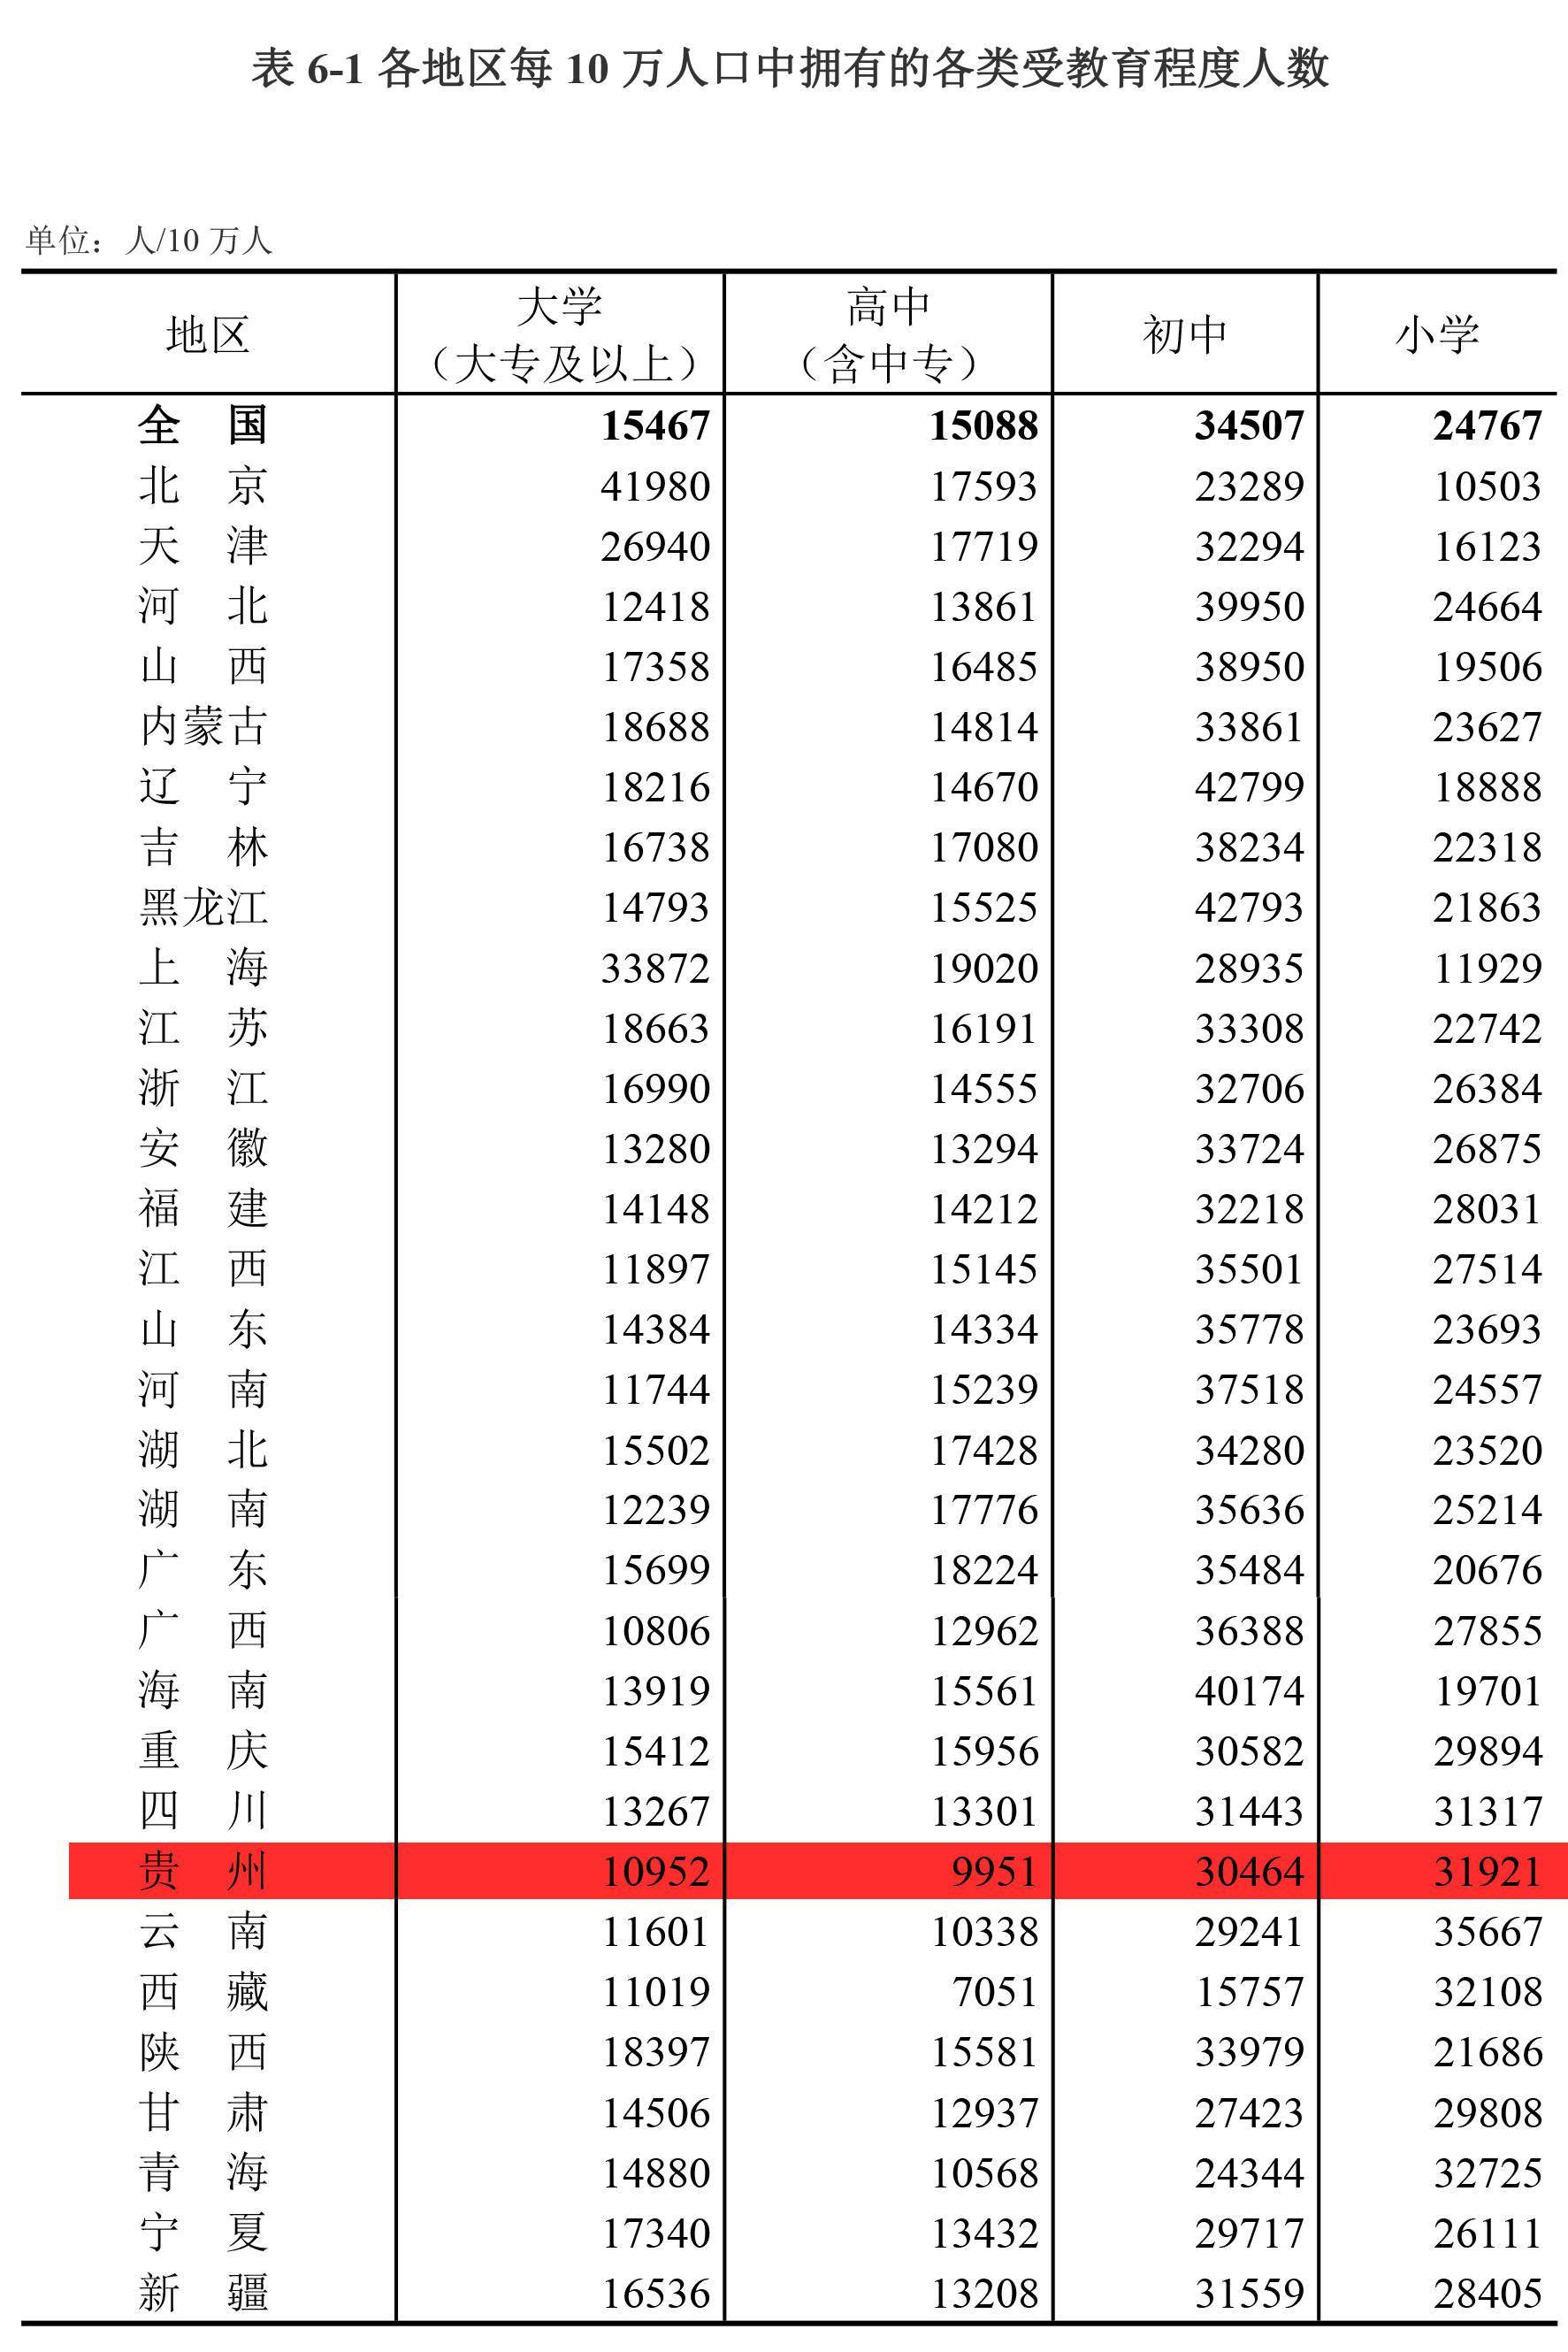 七普结果公布:贵州超3856万人,具体情况是……